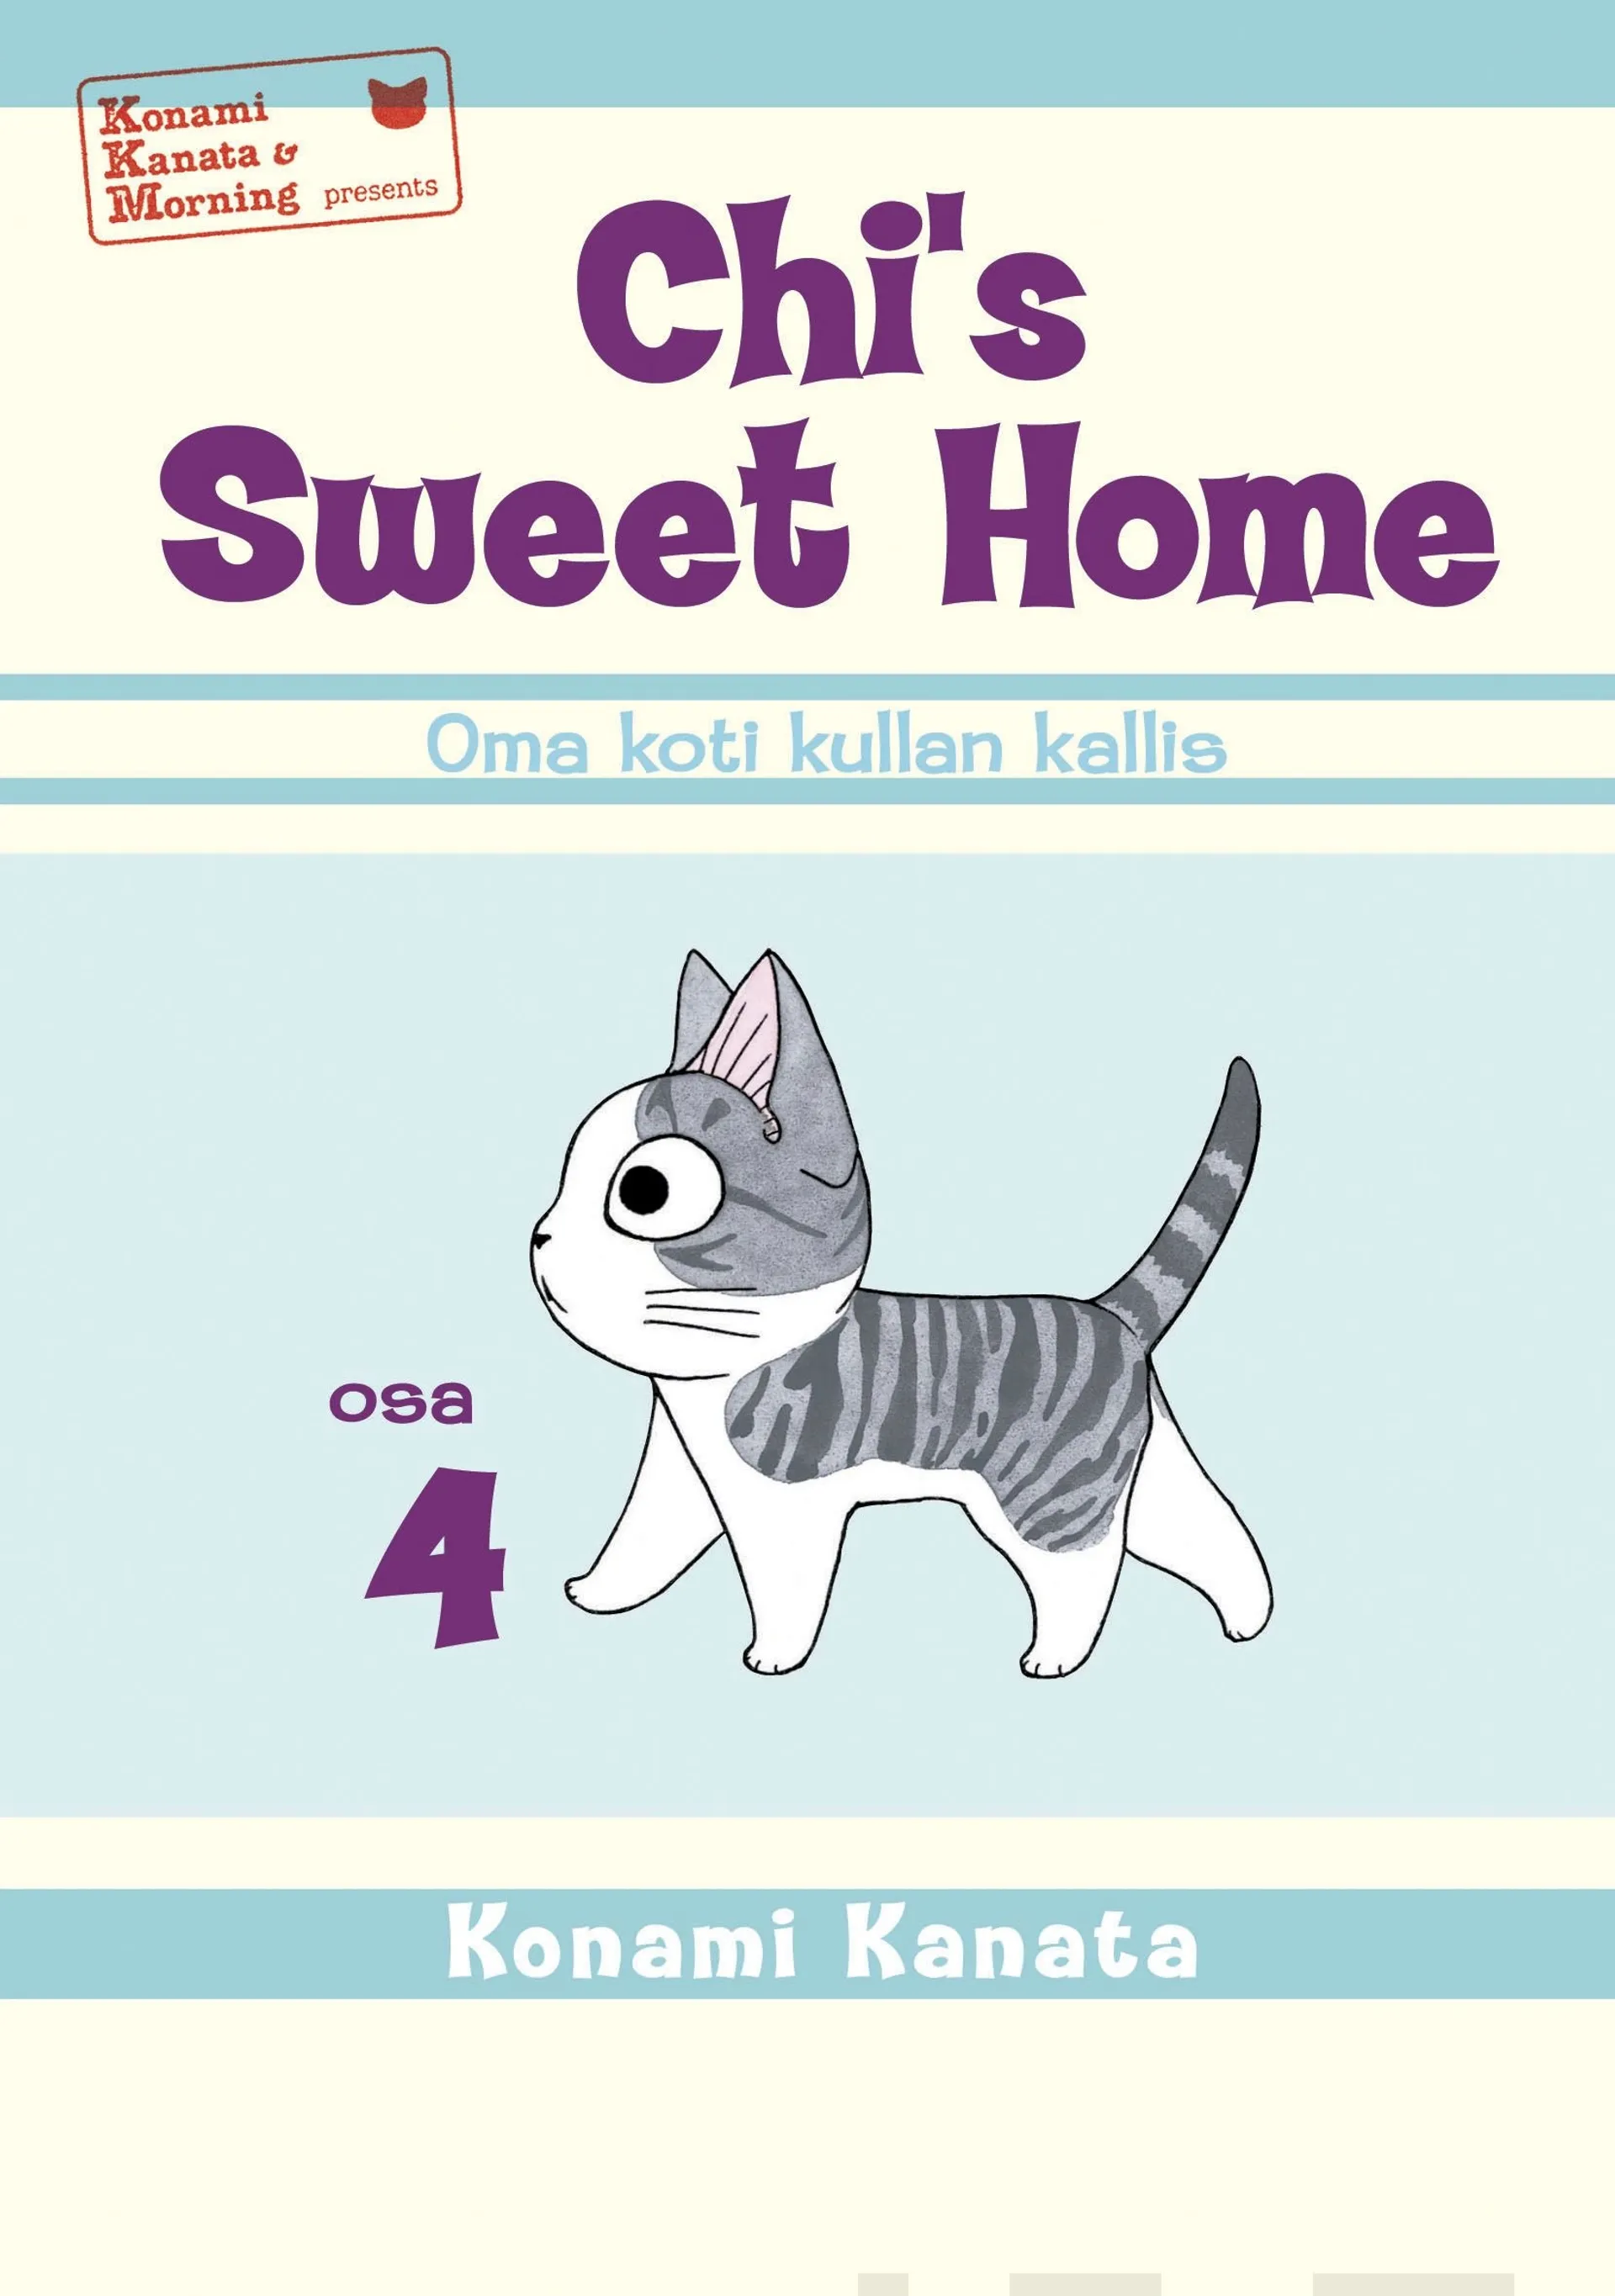 Kanata, Chi's sweet home 4 - oma koti kullan kallis